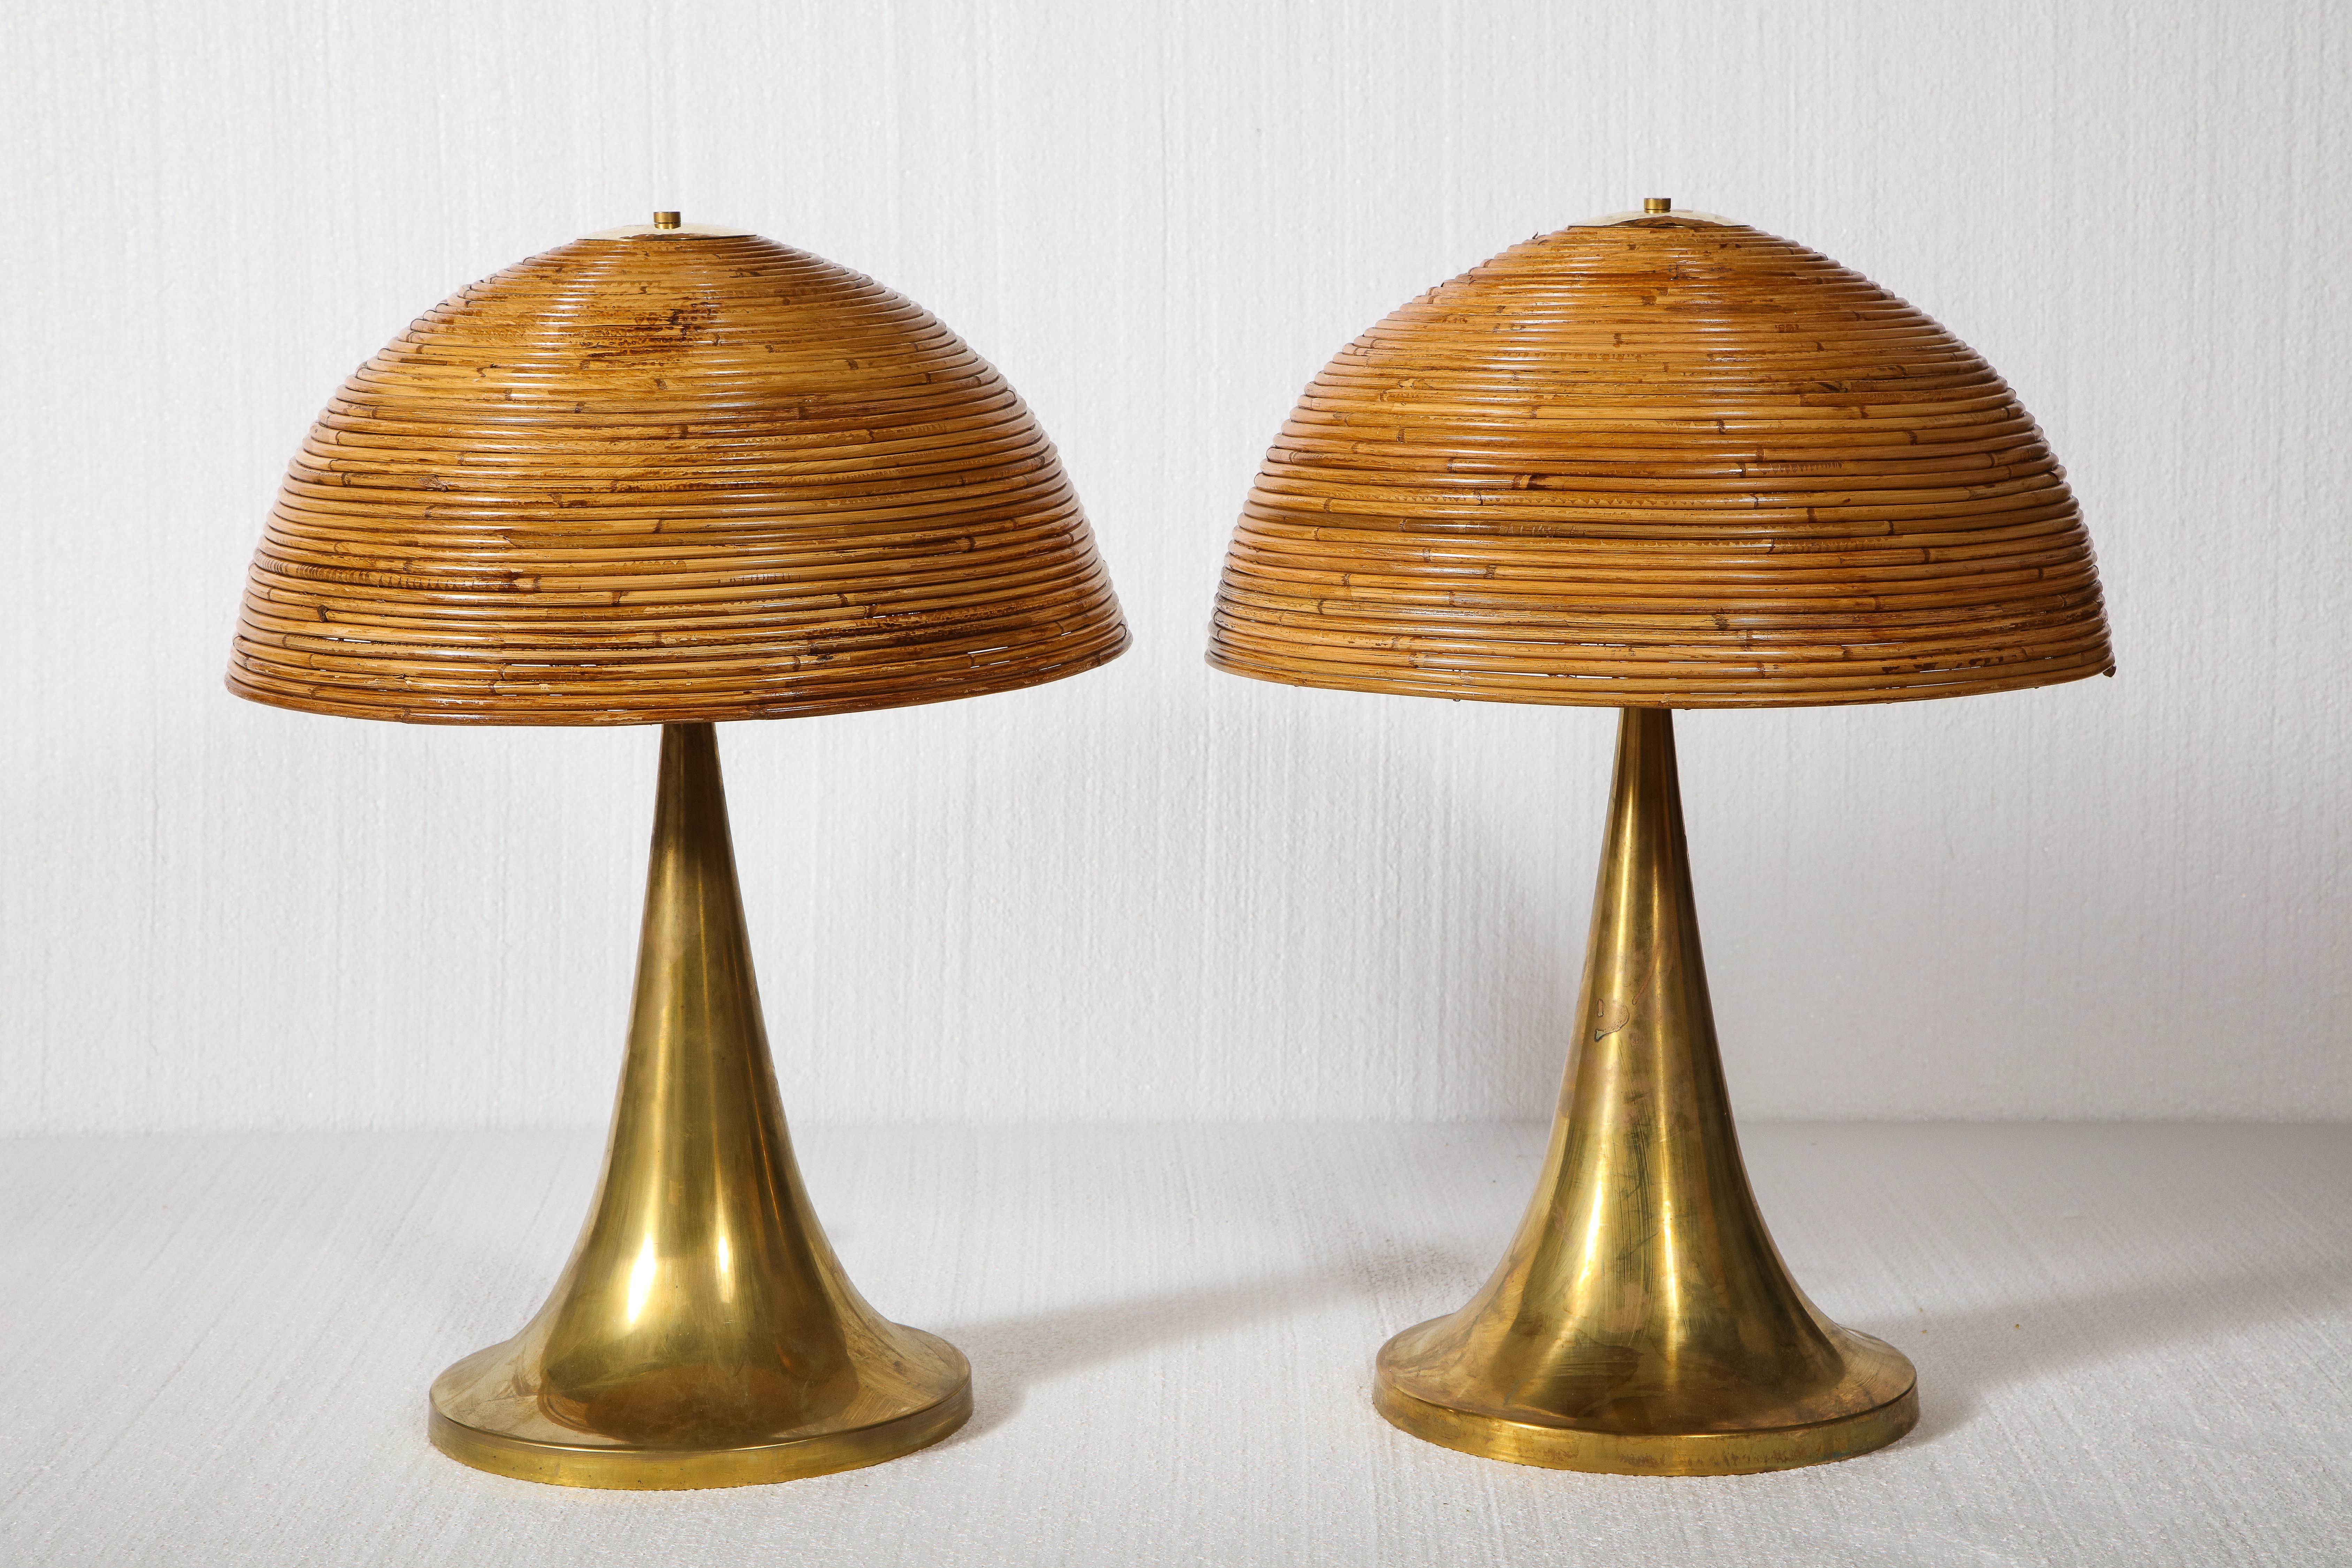 grande paire de lampes de table en bambou avec bases en laiton.

Des lampes de table belles et chics. Jolies bases en laiton et plateaux en bambou maintenus par une toupie en laiton.